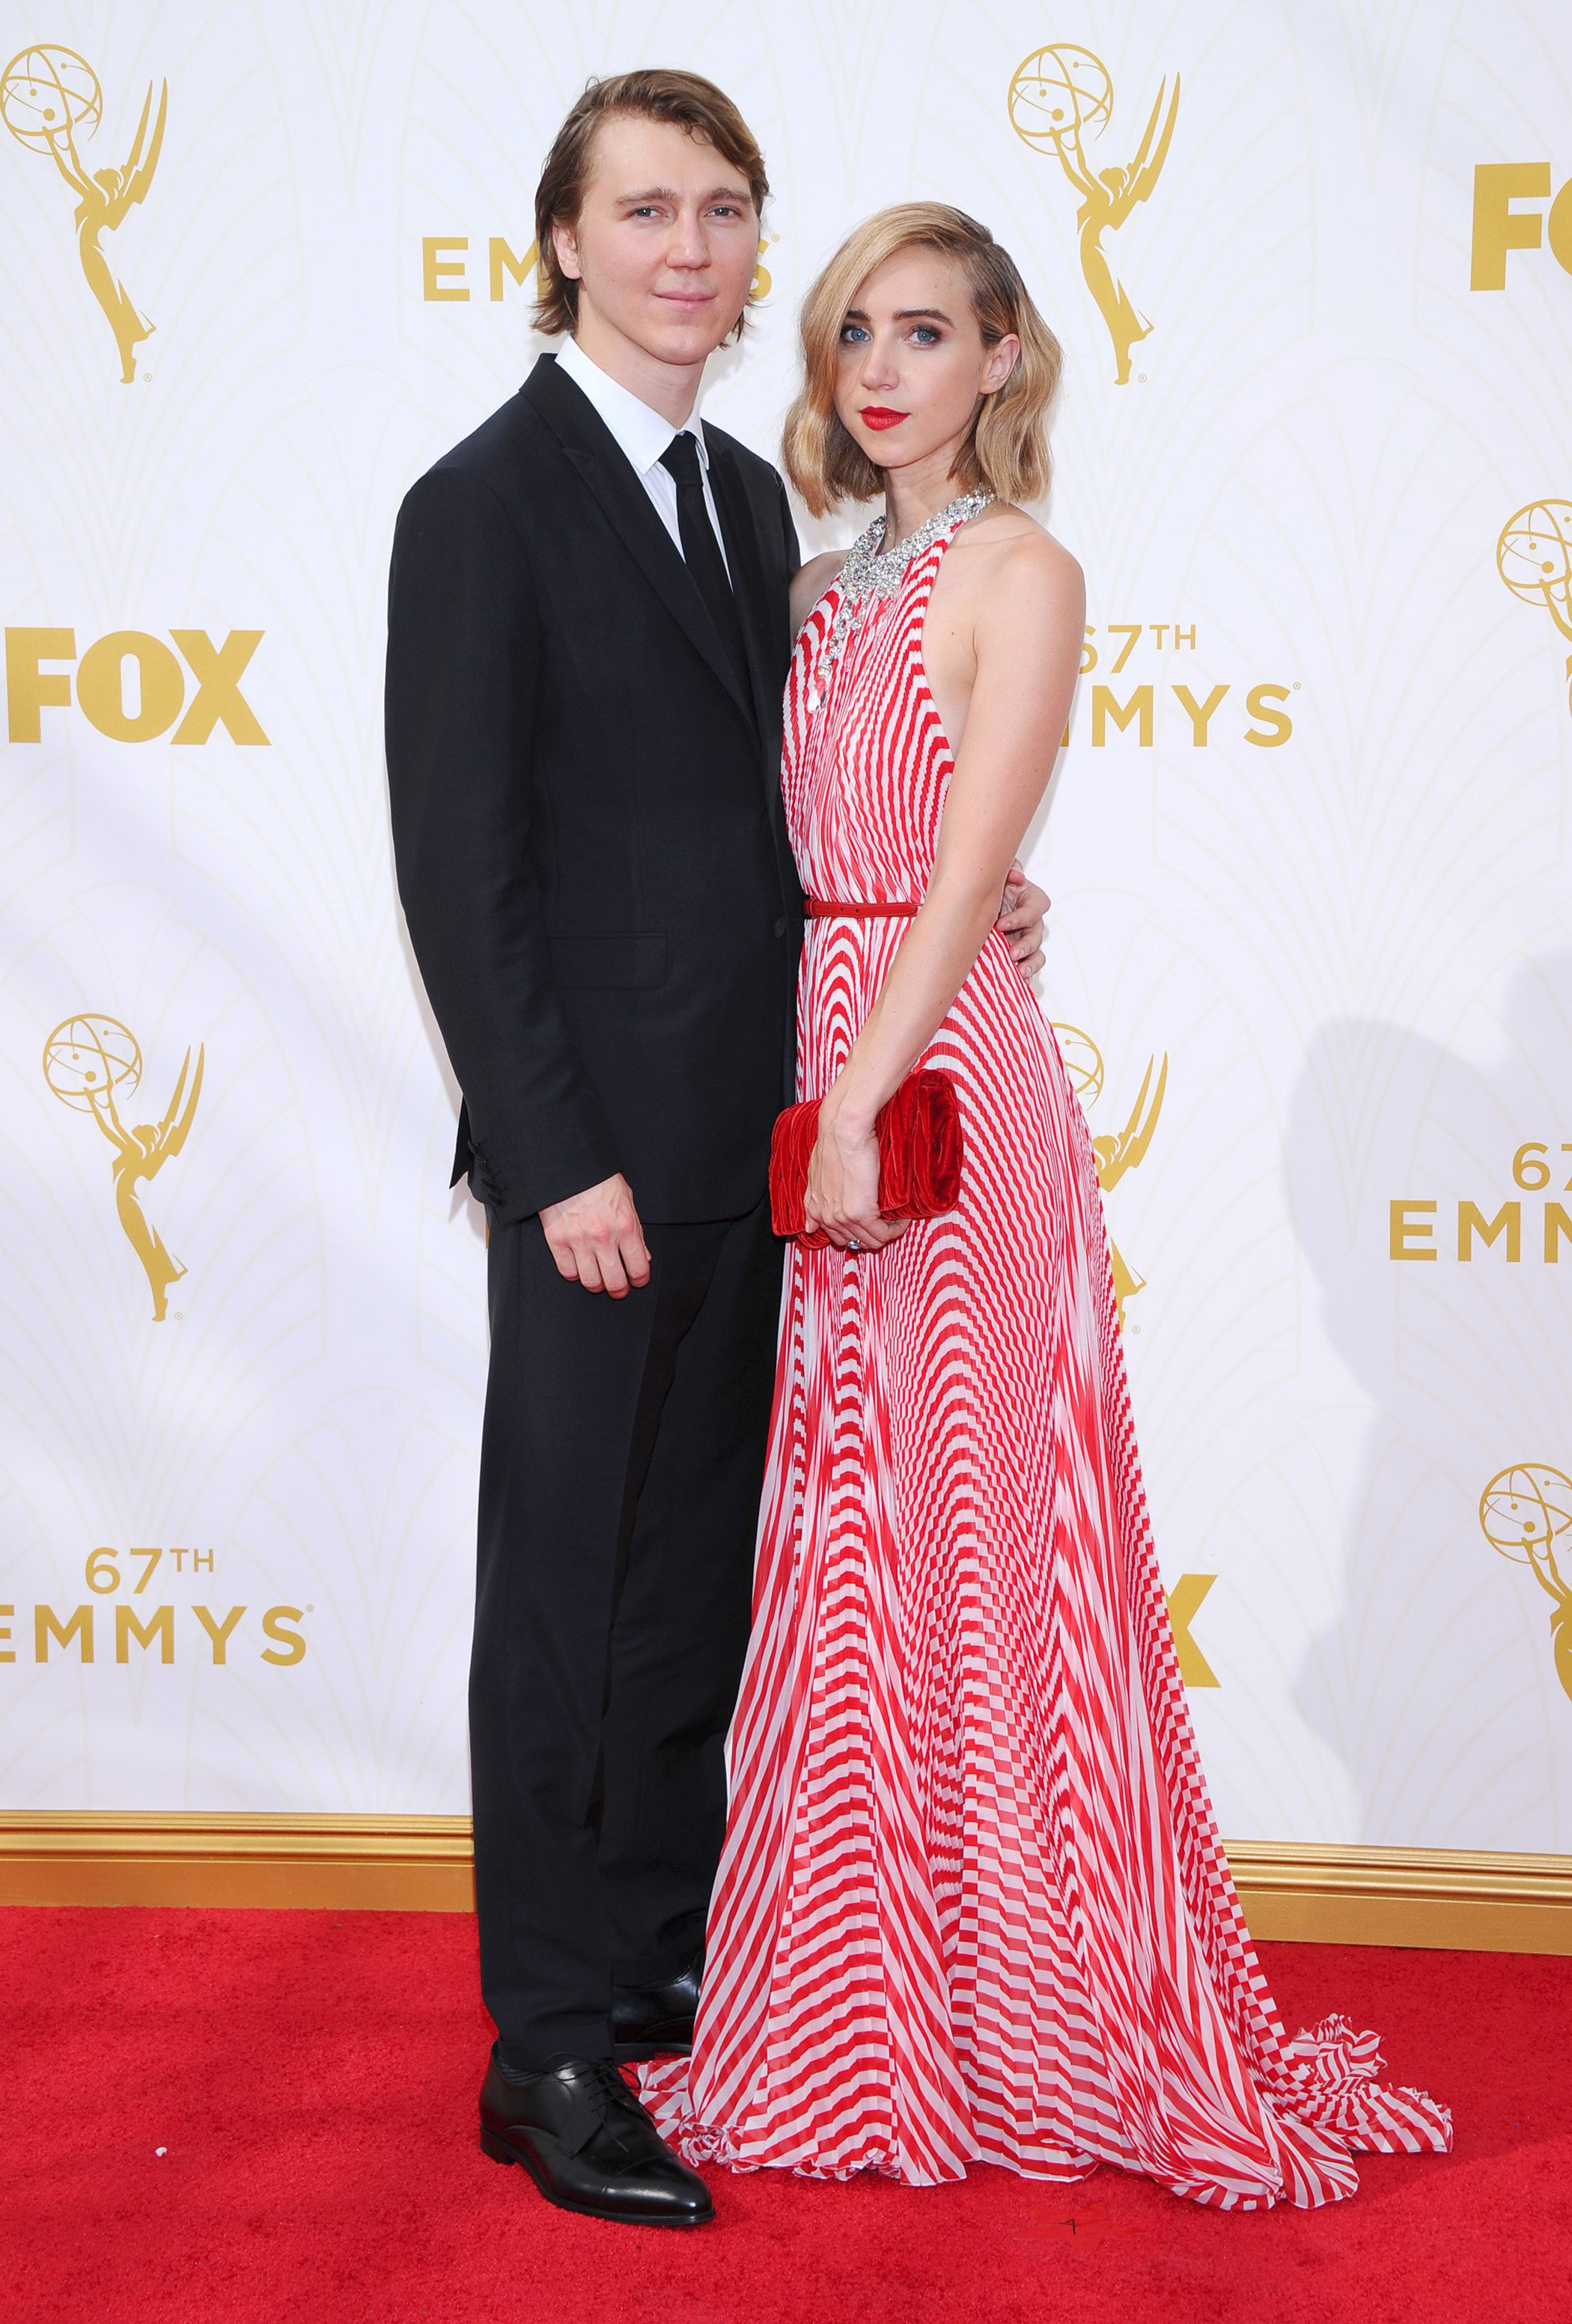 67th Emmys Awards - Paul Dano and Zoe Kazan - 2015